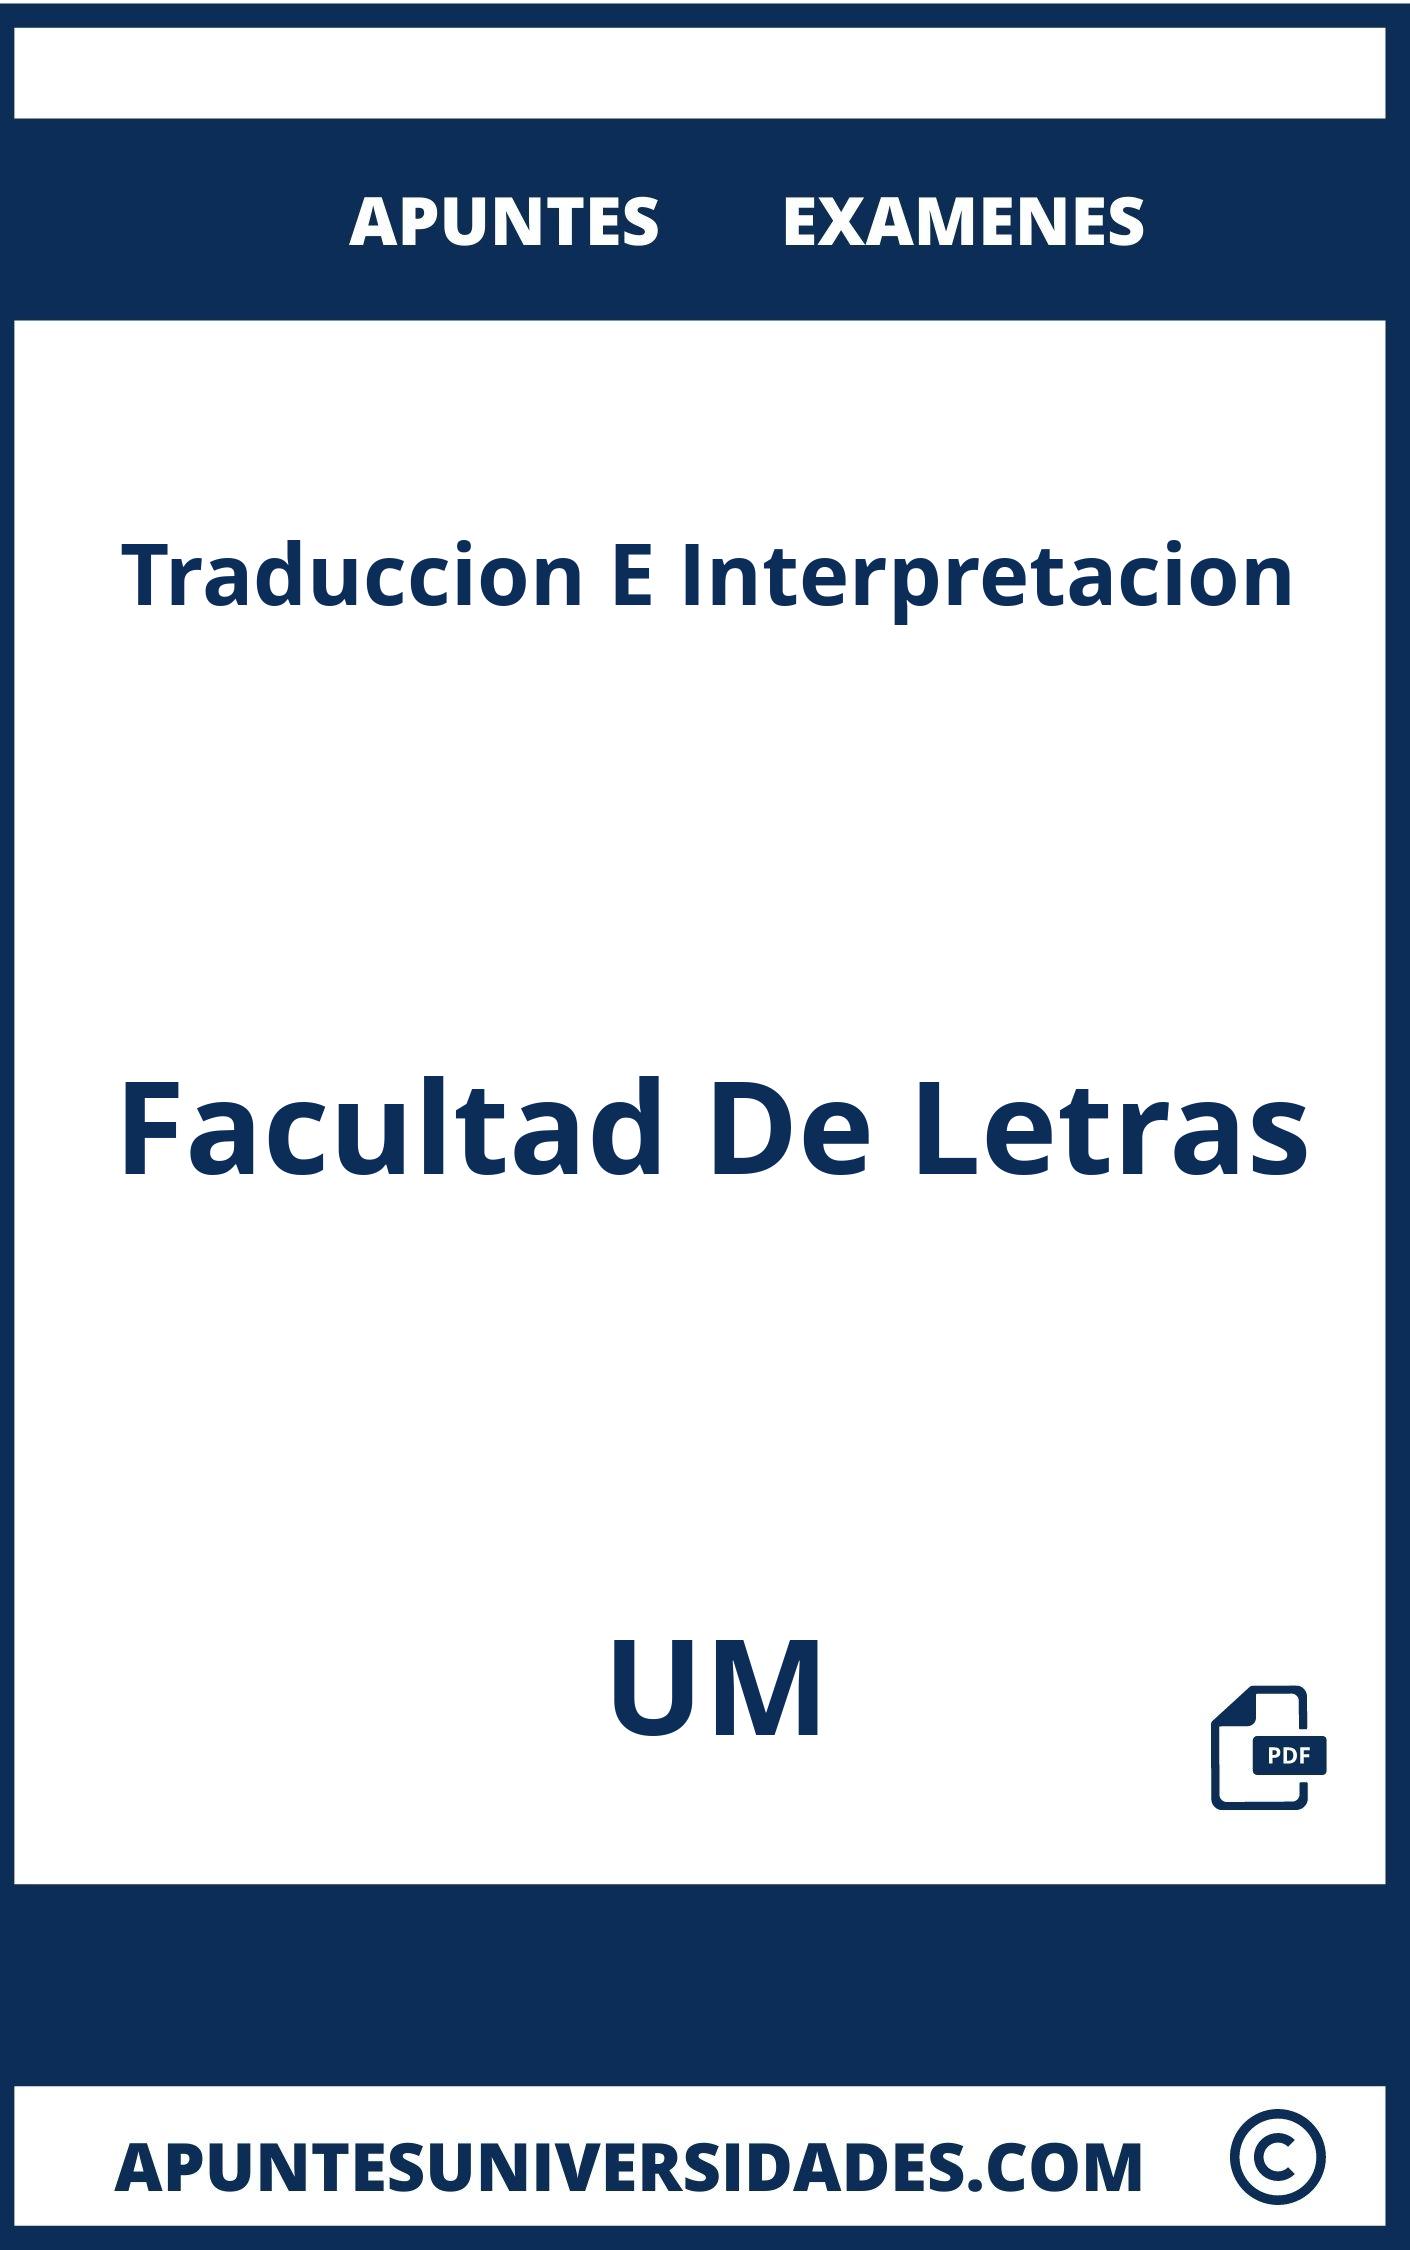 Apuntes y Examenes de Traduccion E Interpretacion UM